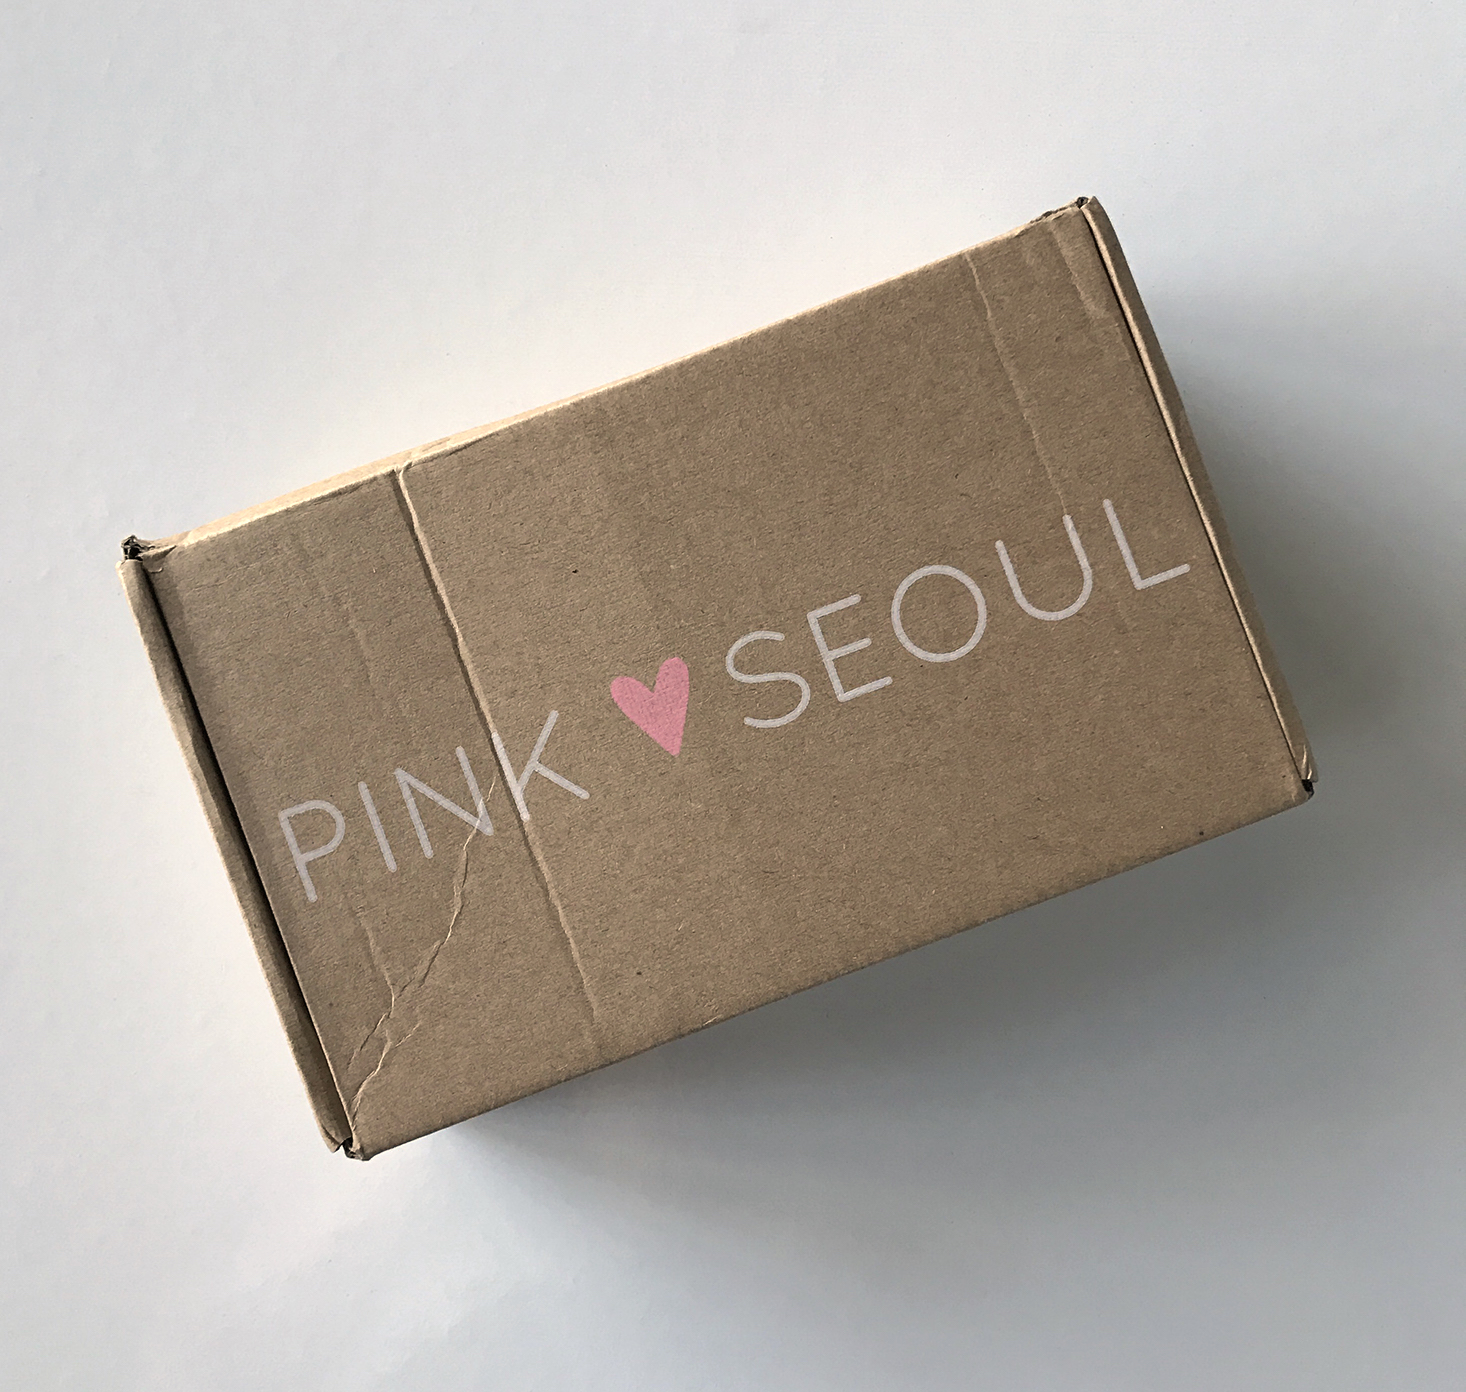 PinkSeoul-Mask-Box-January-2017-Box